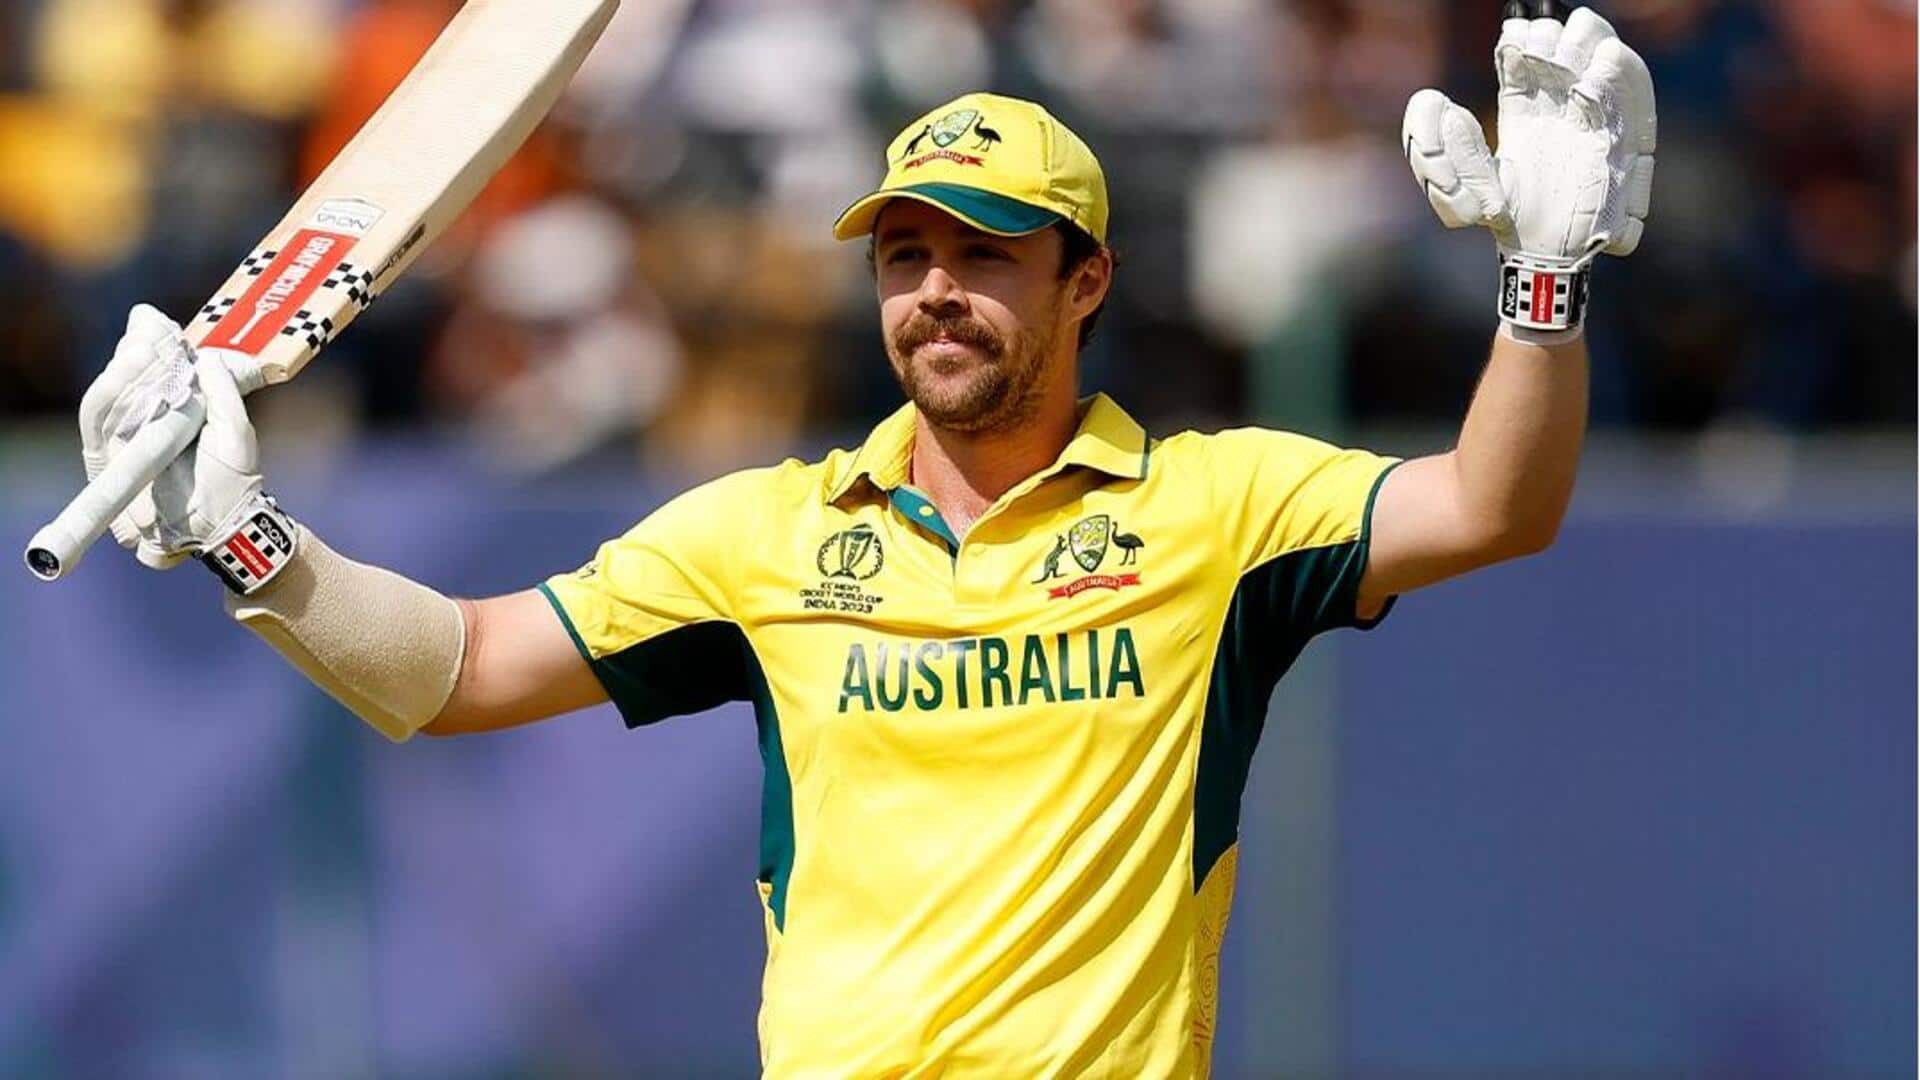 दक्षिण अफ्रीका बनाम ऑस्ट्रेलिया: ट्रेविस हेड ने लगाया वनडे करियर का 16वां अर्धशतक, जानिए उनके आंकड़े